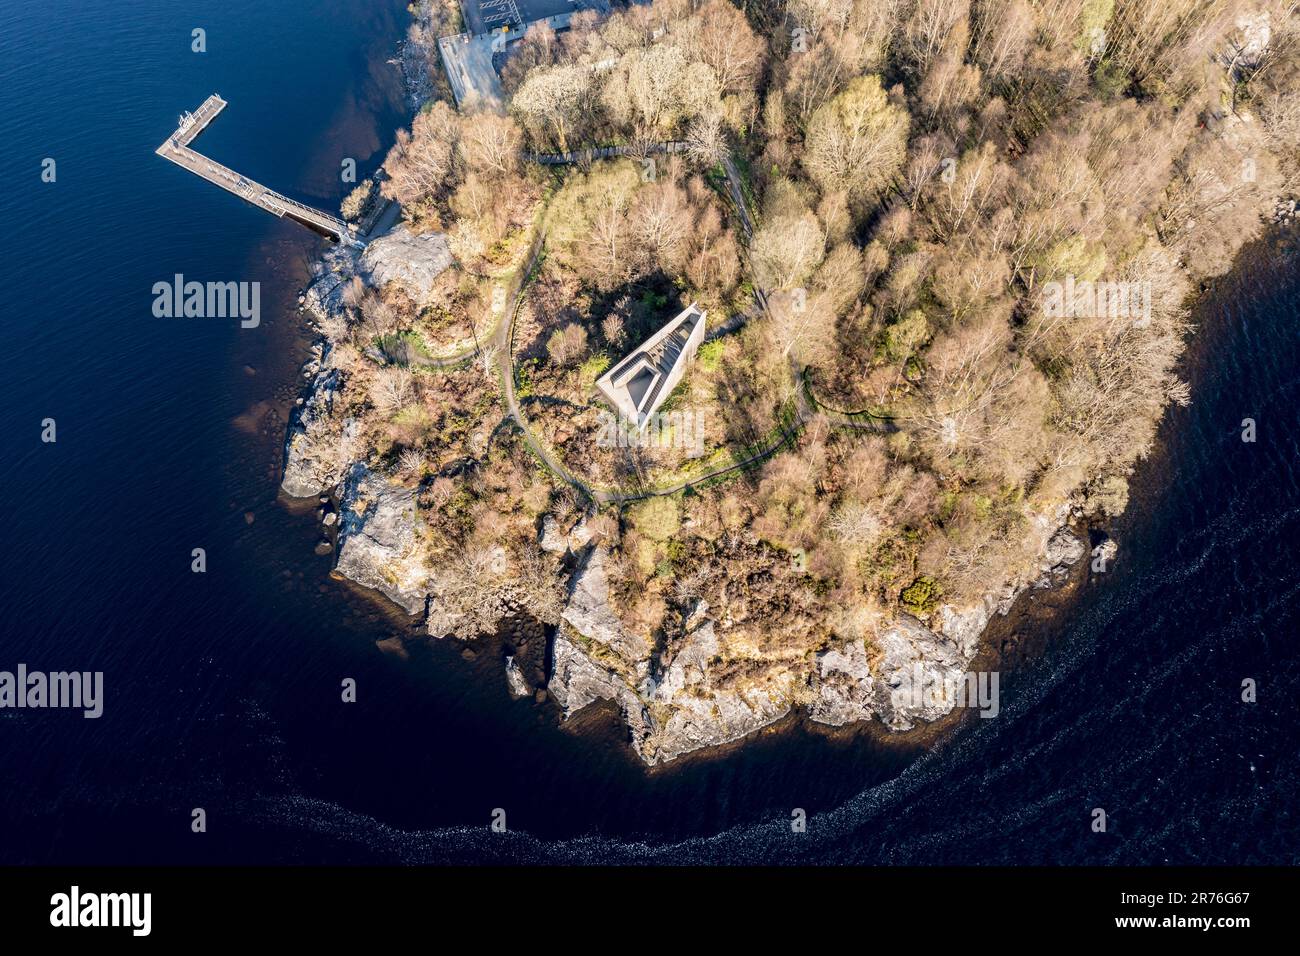 Vista aerea, punto di osservazione piramidale in legno sulla penisola di Inveruglas, Lago Lomond, Scozia. Foto Stock